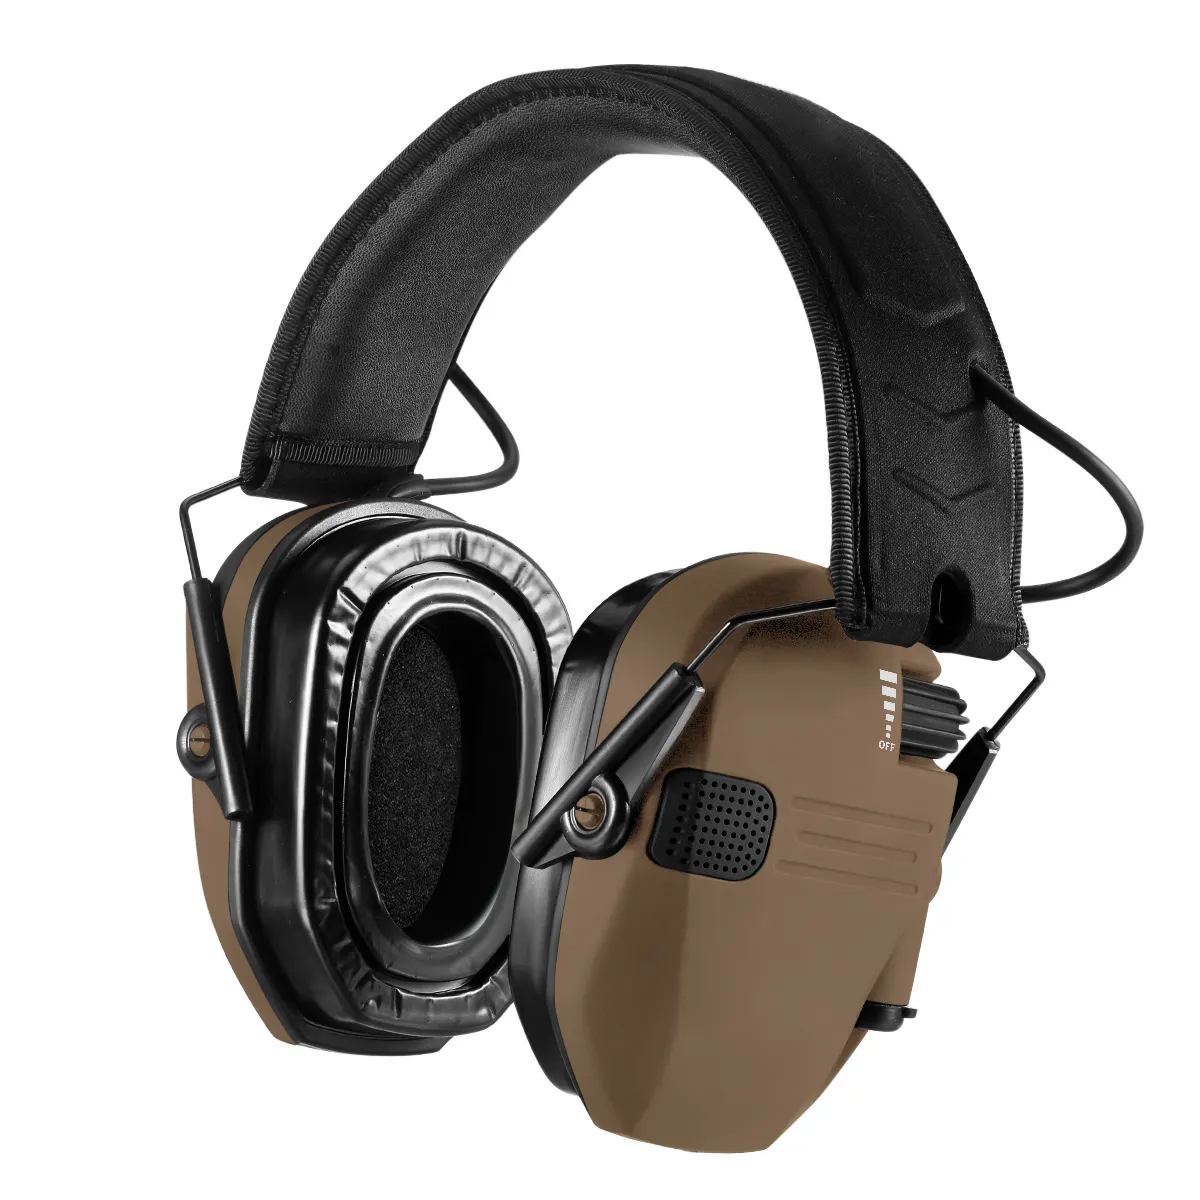 Protetor auditivo eletrônico EM025 Prohear Clay, protetor auditivo eletrônico à prova de som de alta reputação